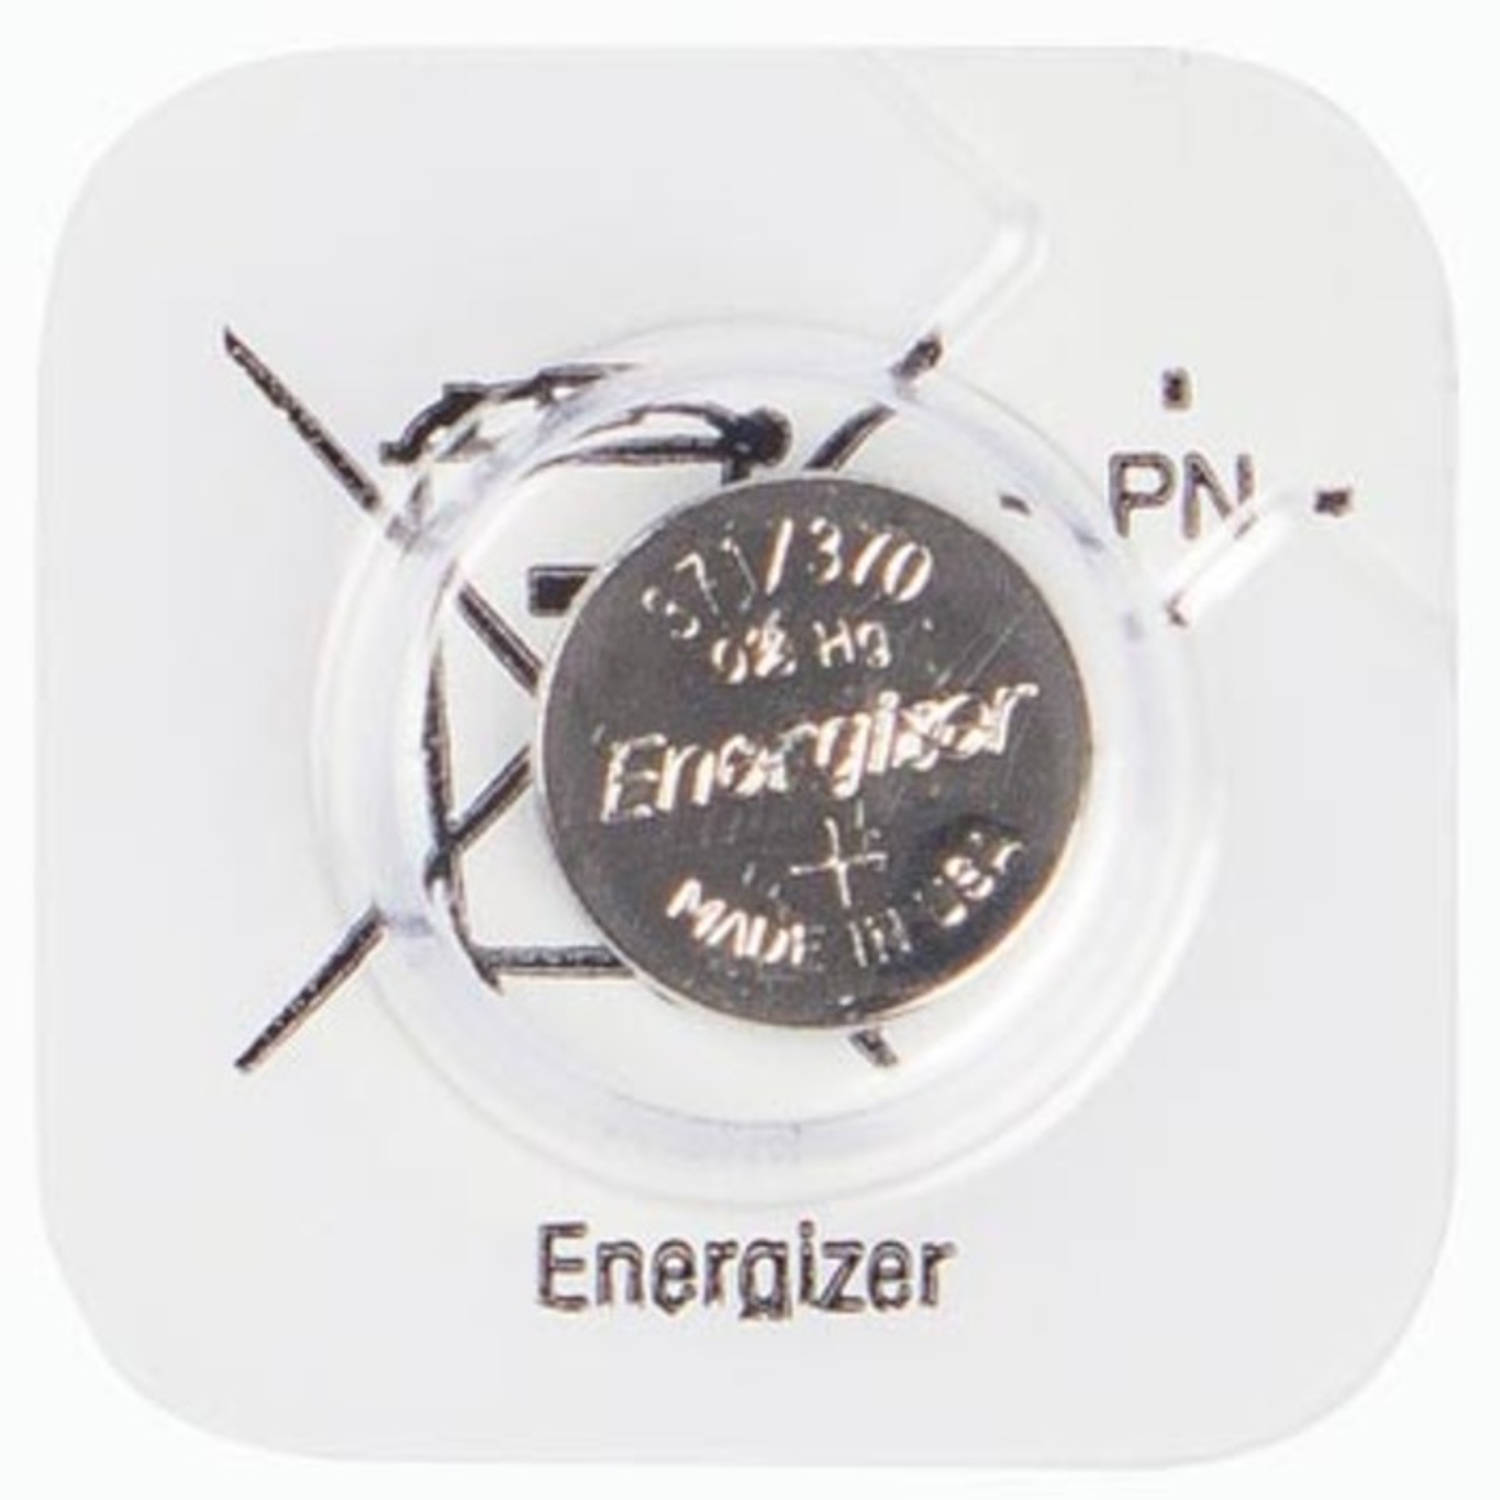 Energizer knoopcel 371/370, op mini-blister | Blokker